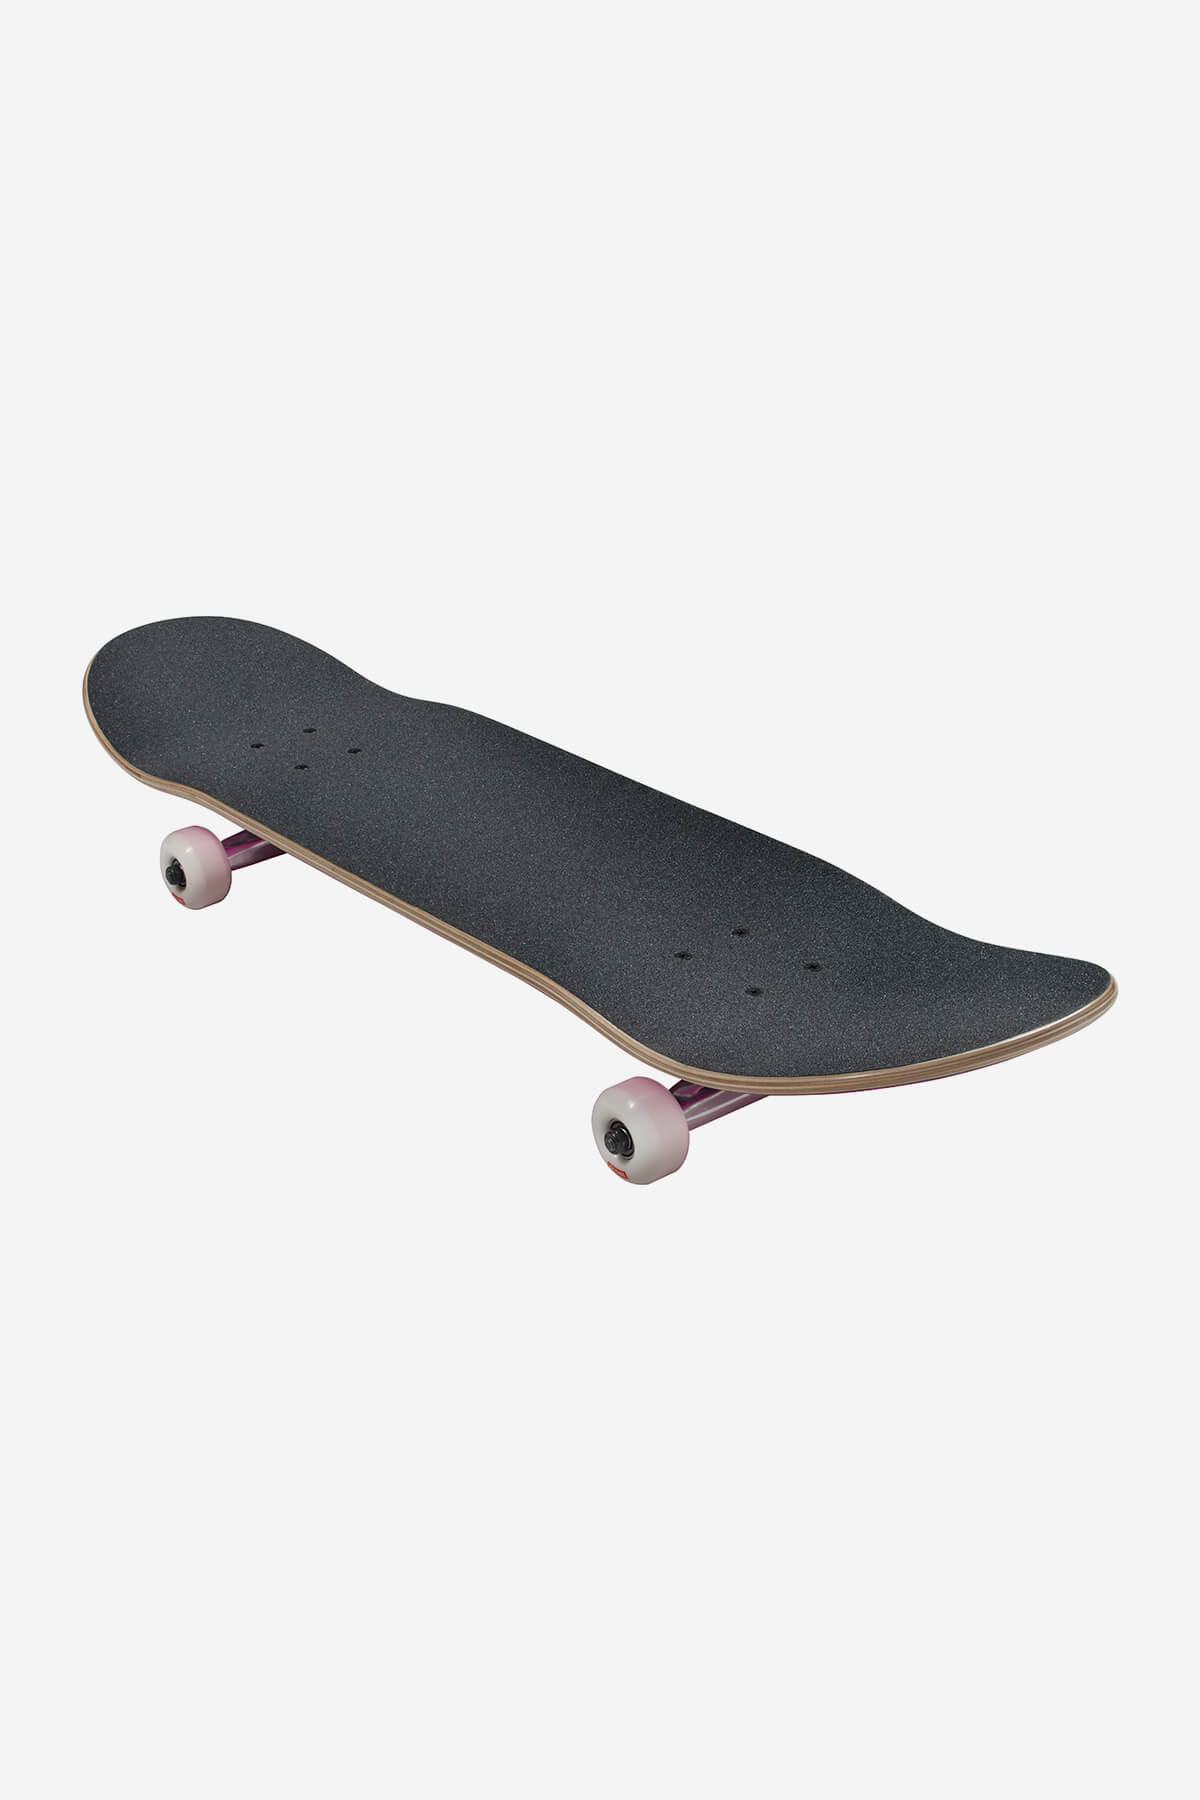 Globe Skateboard completen Goodstock 8.25" Compleet Skateboard in Neon Purple